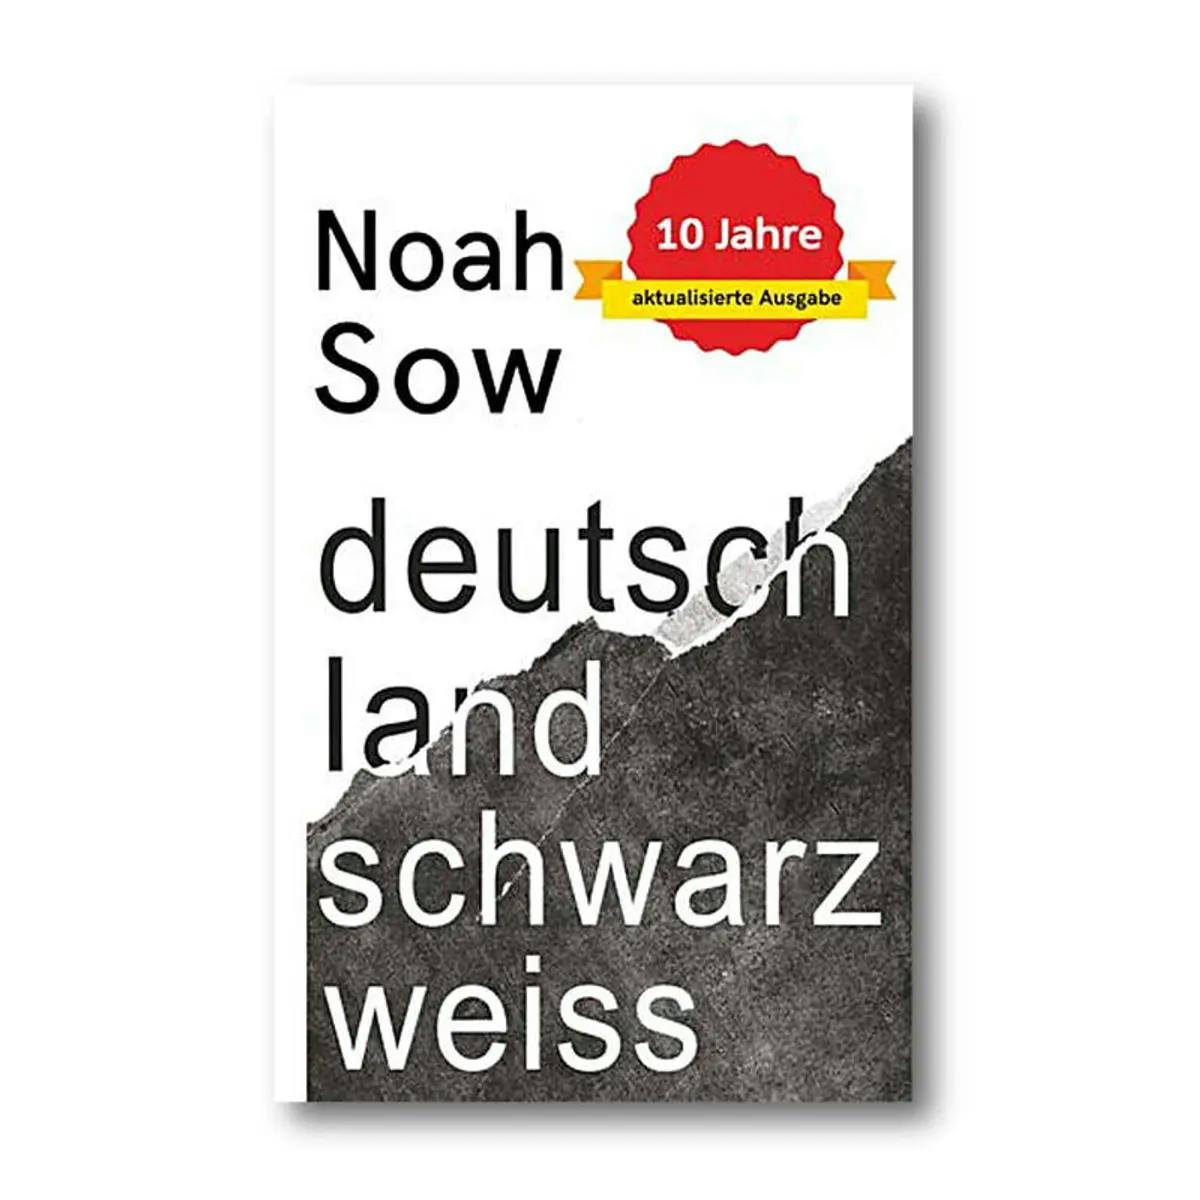 Buchcover von Noah Snow. Es ist in eine schwarze und eine weiße Hälfte unterteile und trägt die Aufschrift: "Noah Snow deutschland schwarz weiß".